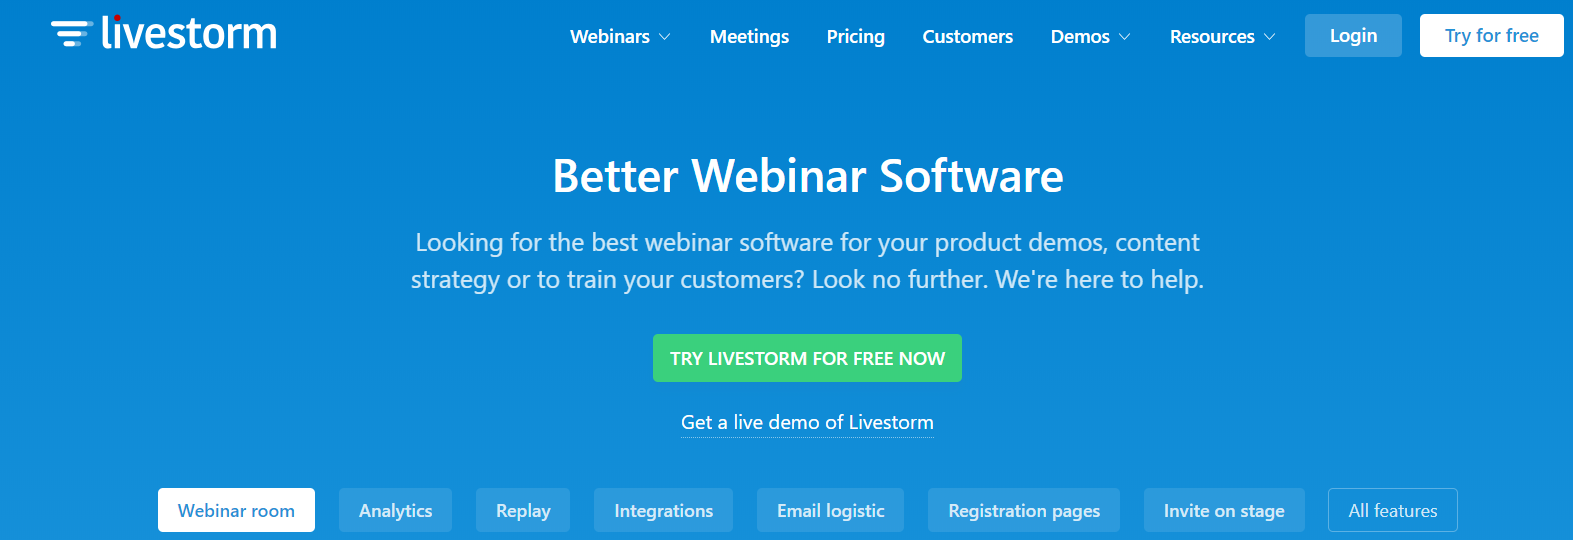 Livestorm - Better Webinar Software